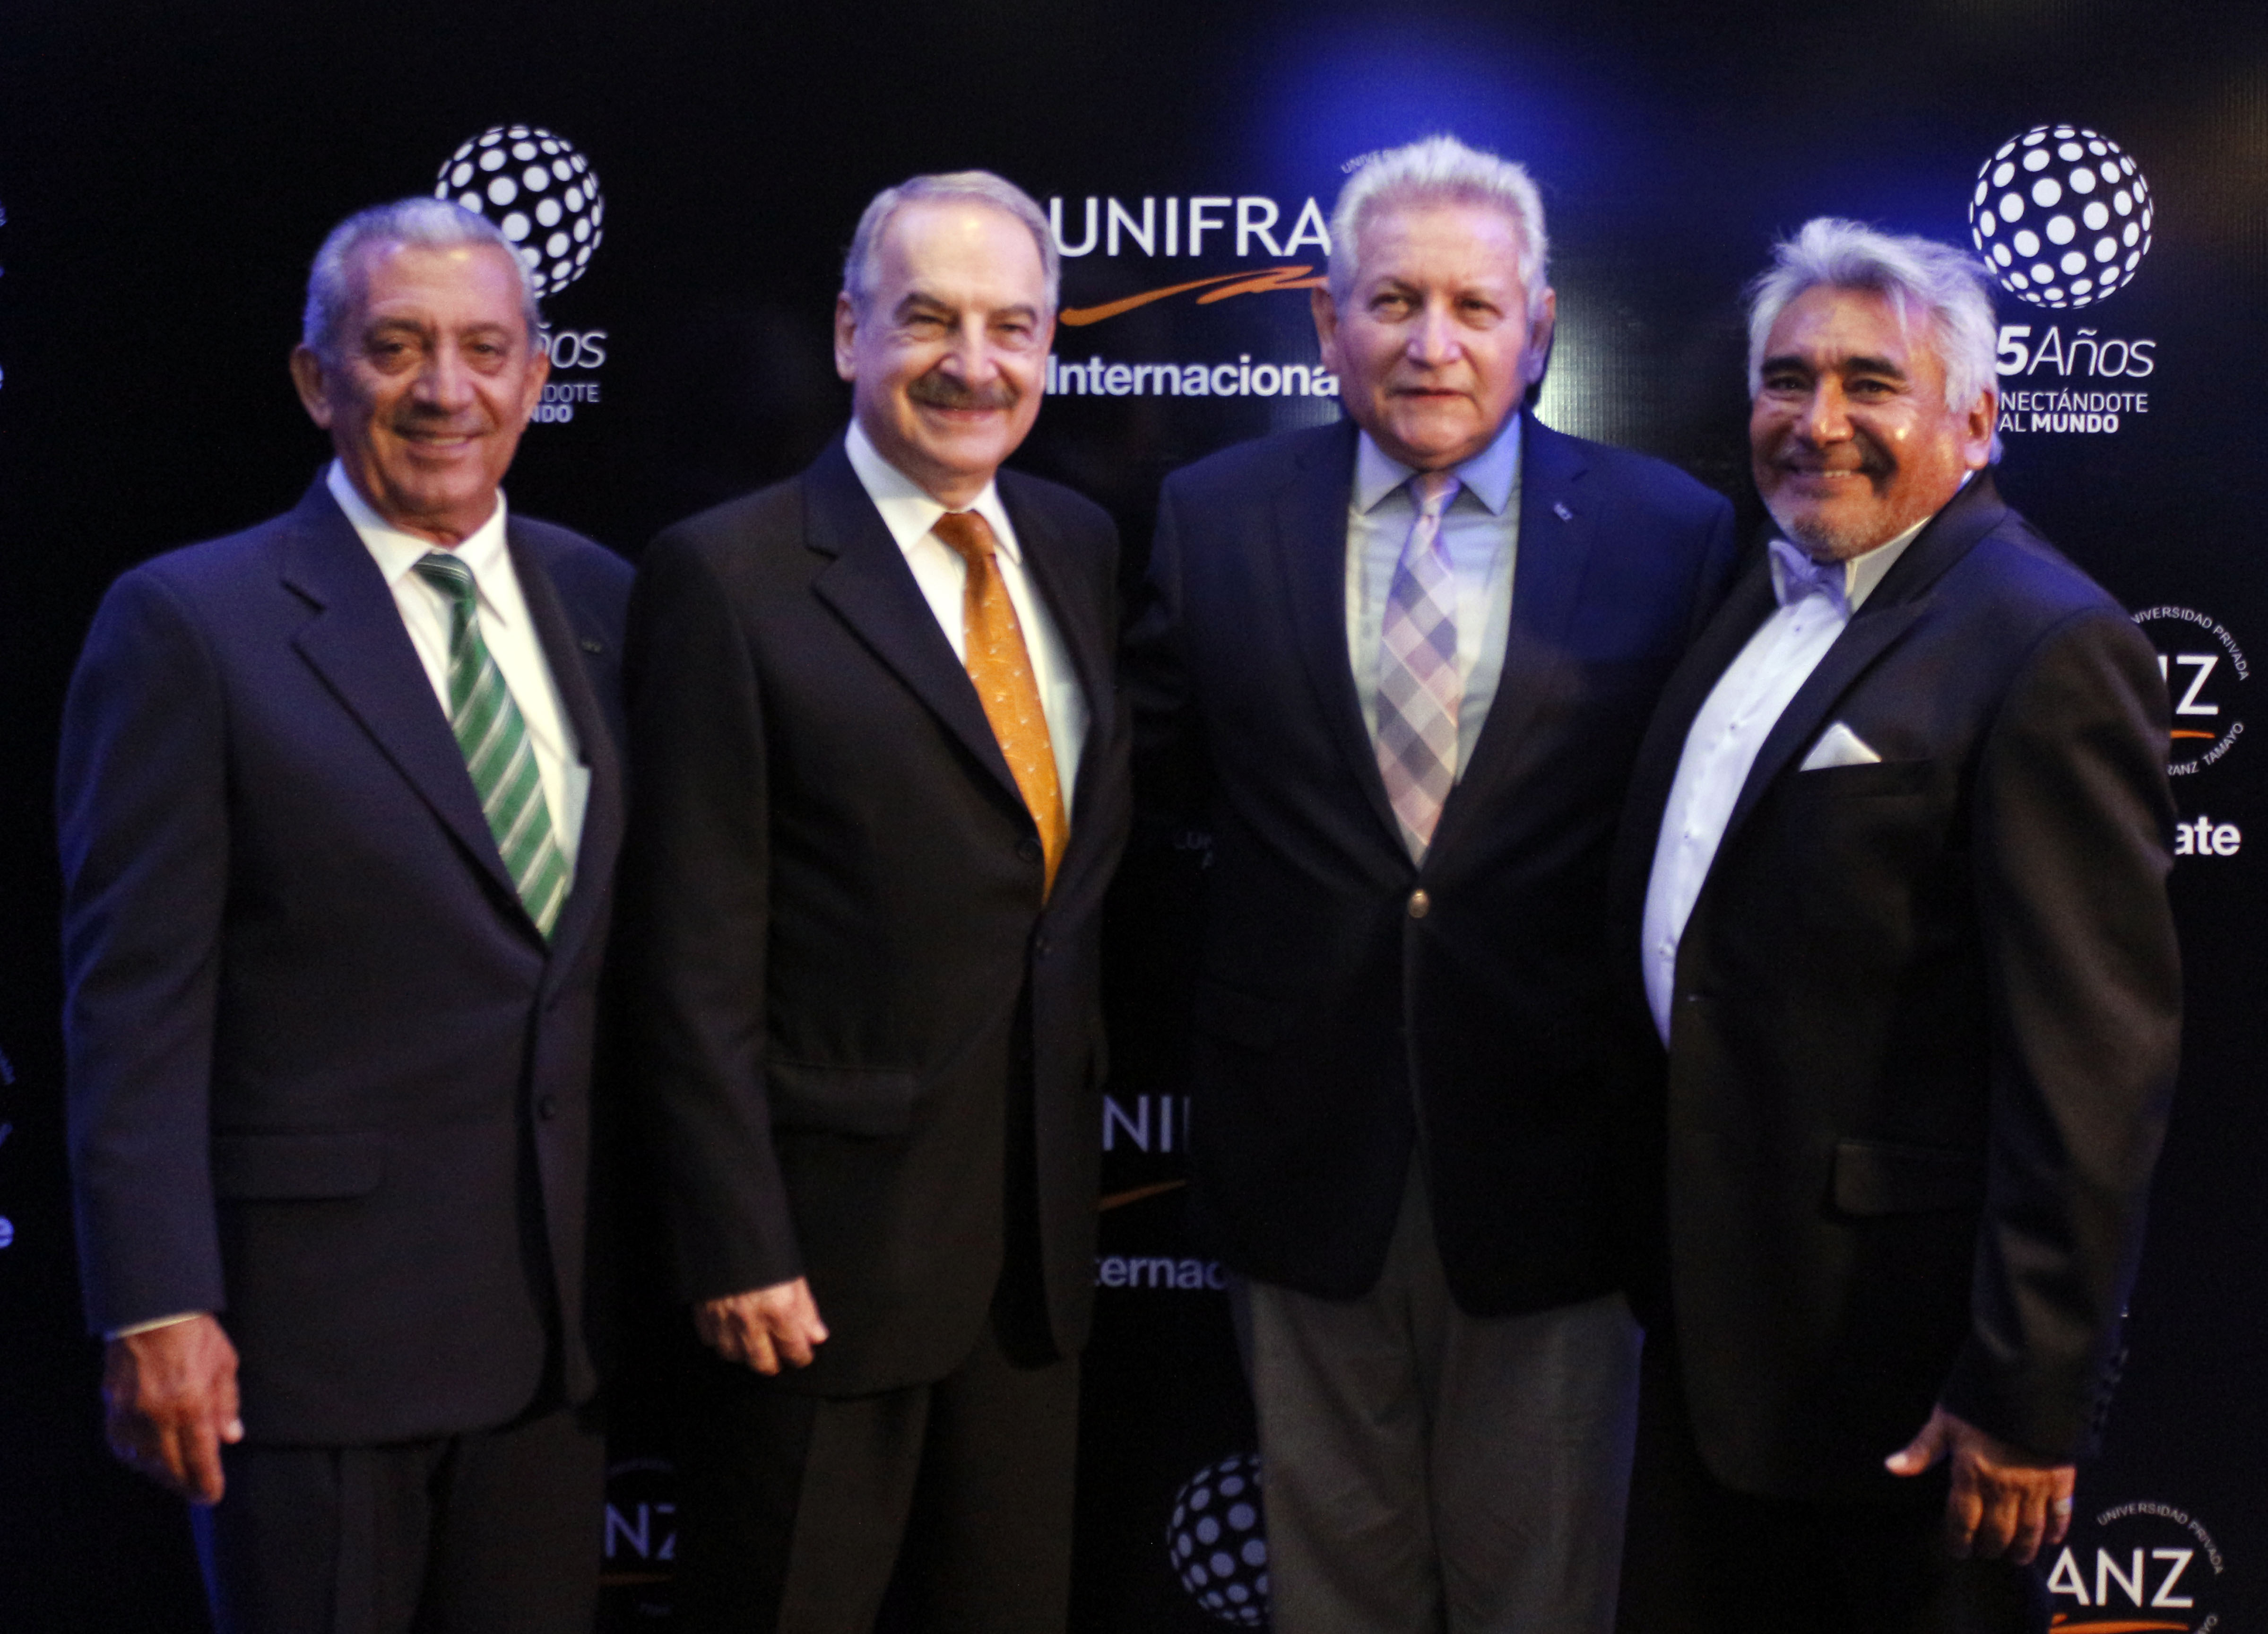 UNIFRANZ celebra 25 años desarrollando talento a nivel nacional